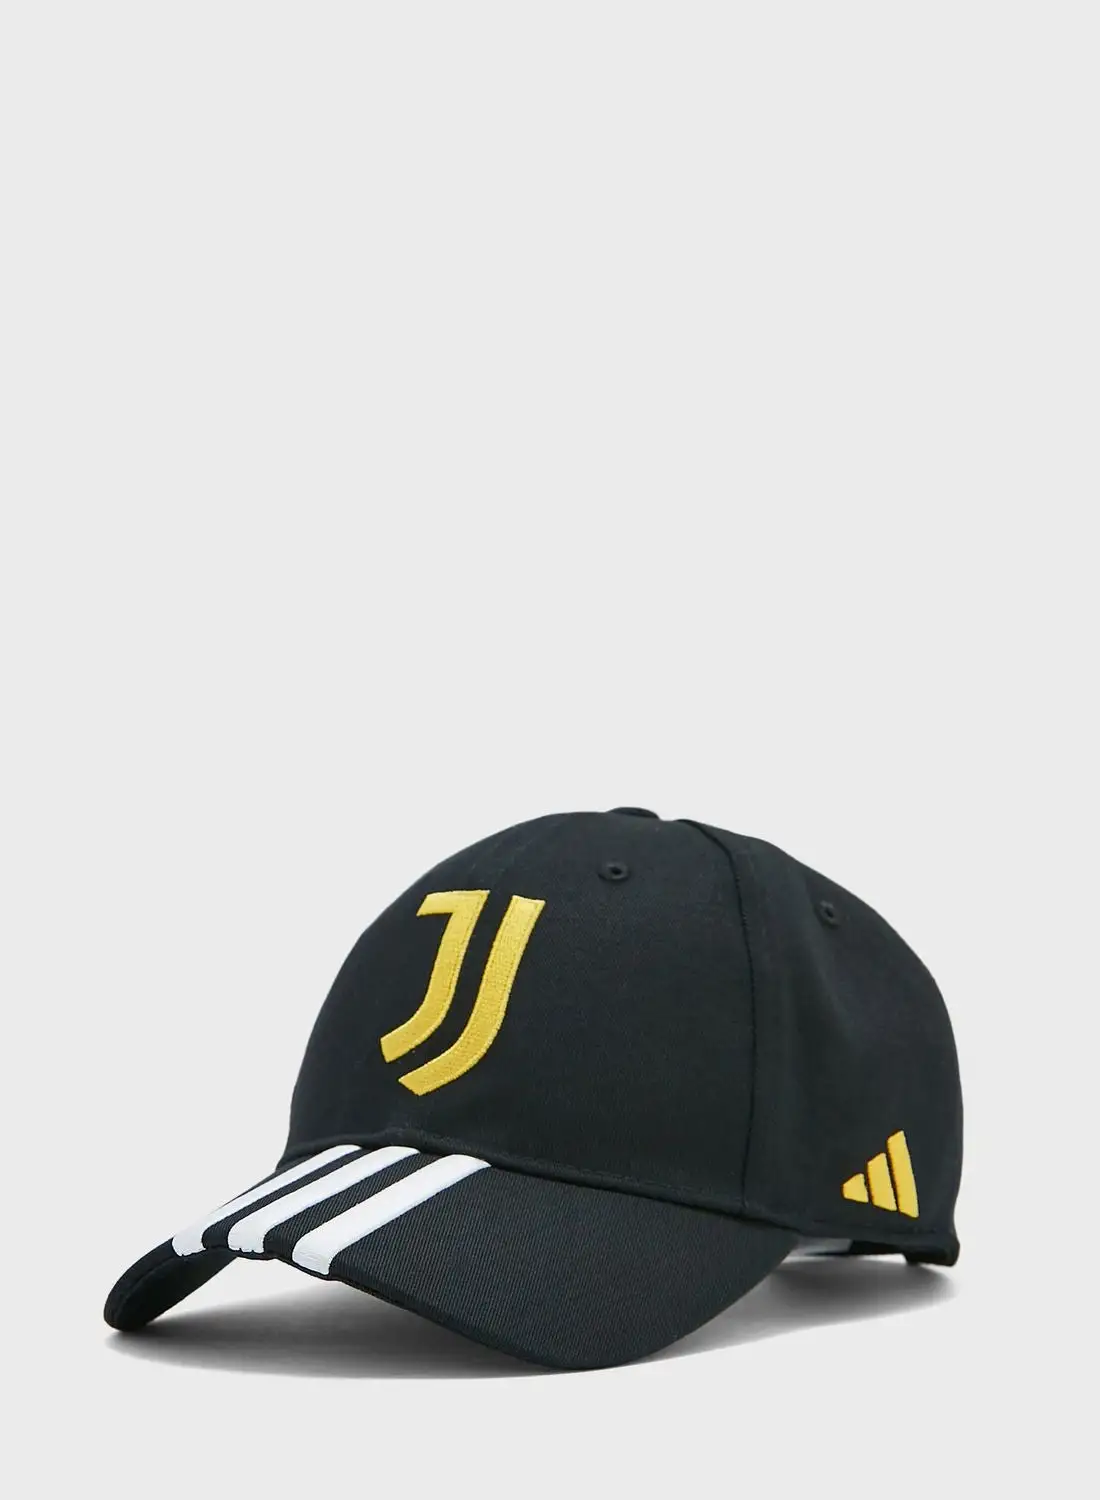 Adidas Juventus Baseball Cap